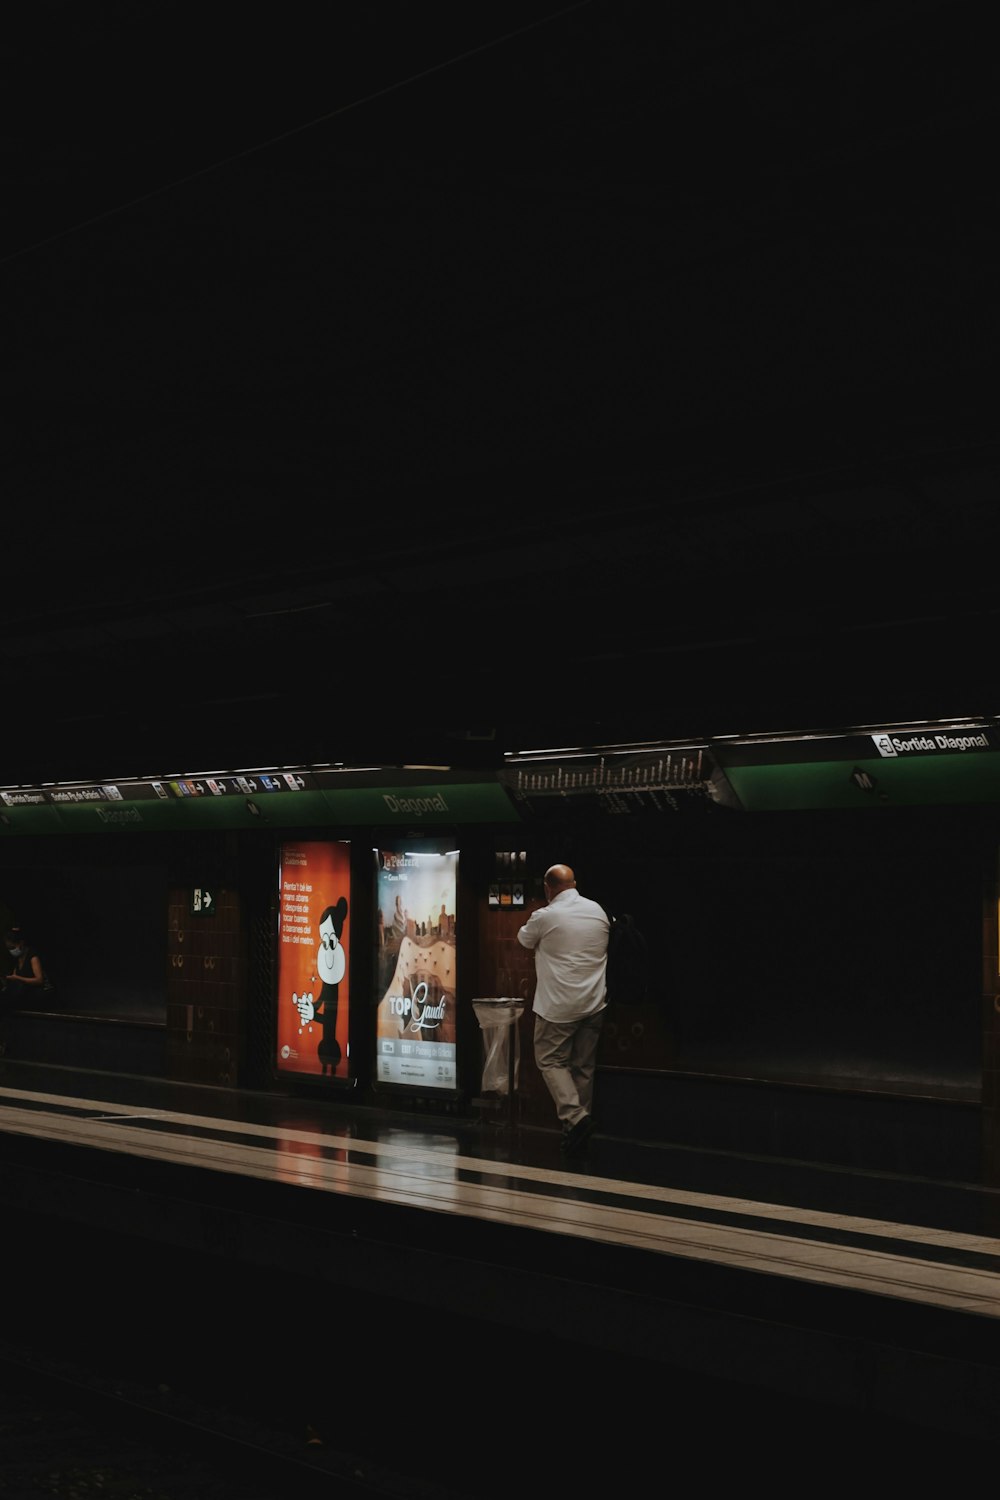 Ein Mann steht auf einem Bahnsteig neben einem Zug